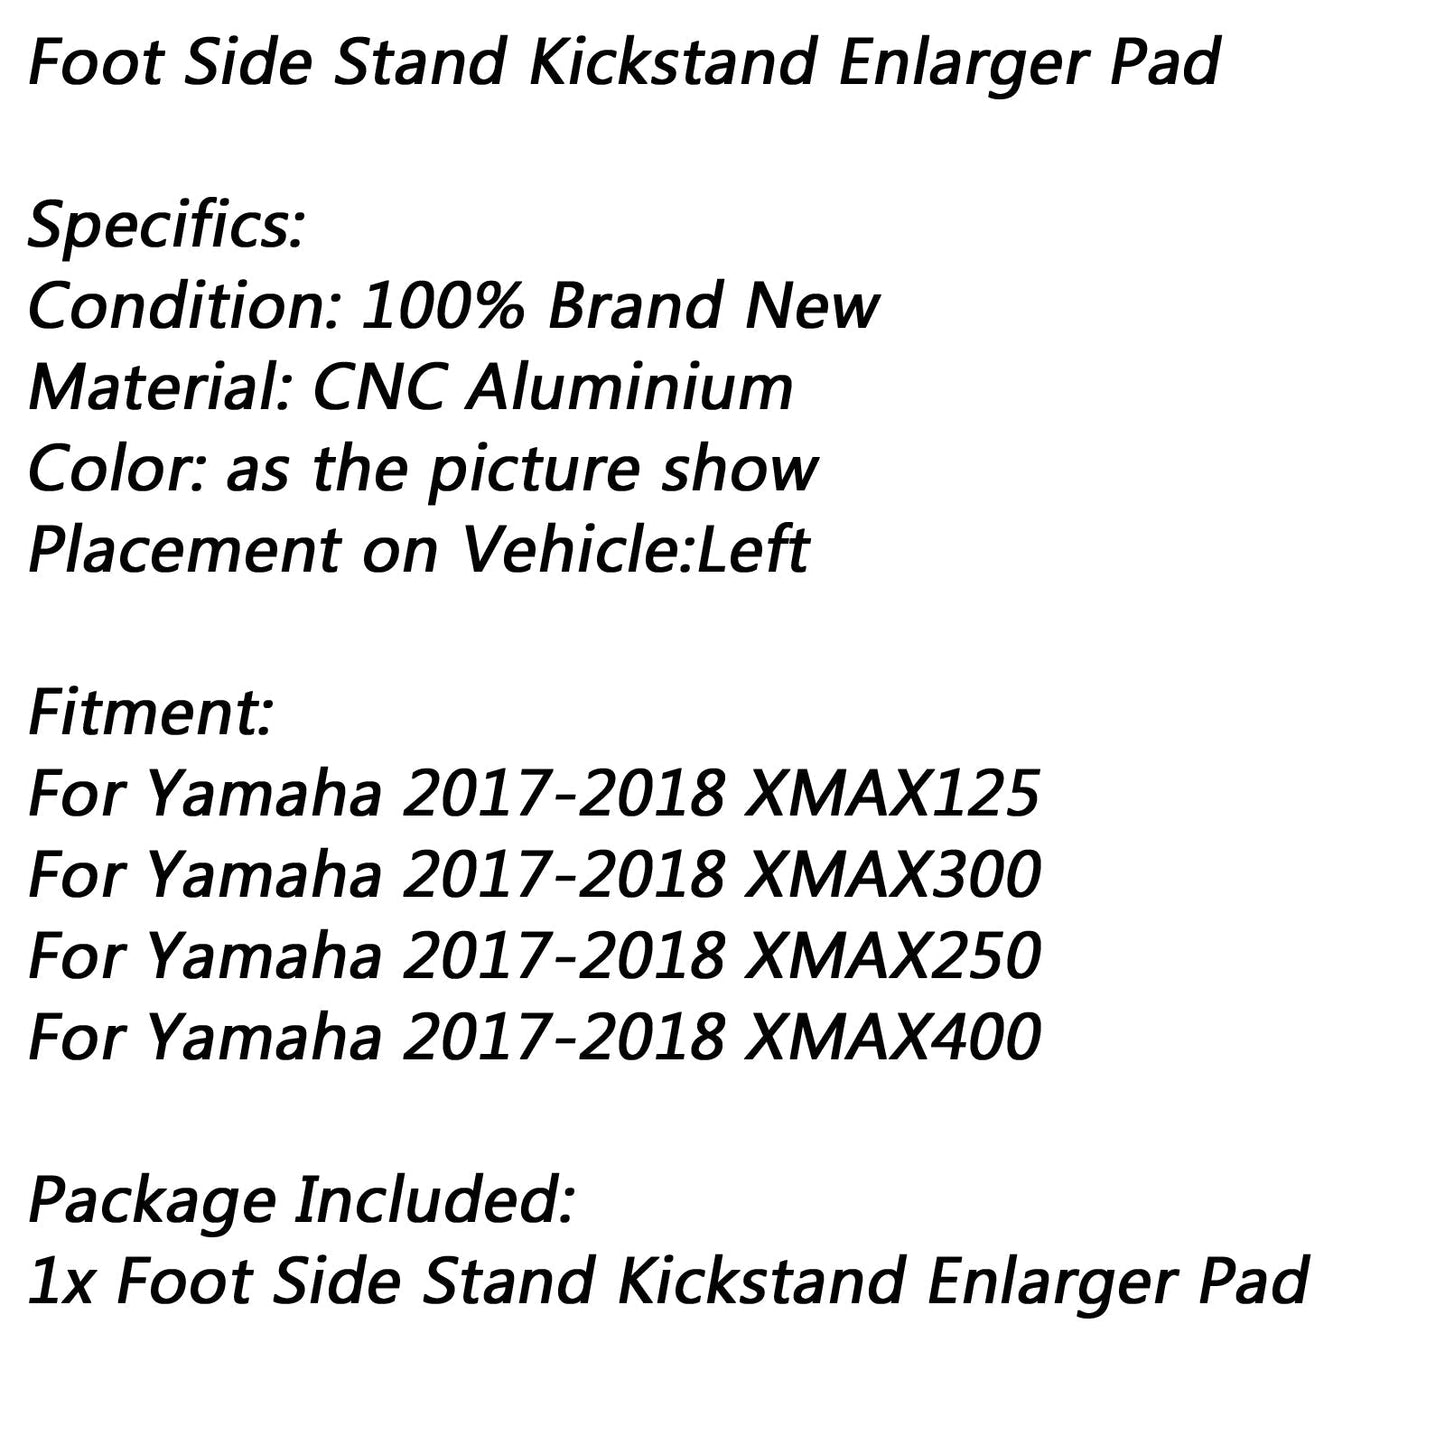 Supporto per piastra di estensione del cavalletto laterale del piede per Yamaha 17-18 XMAX300 400 250 125 generico